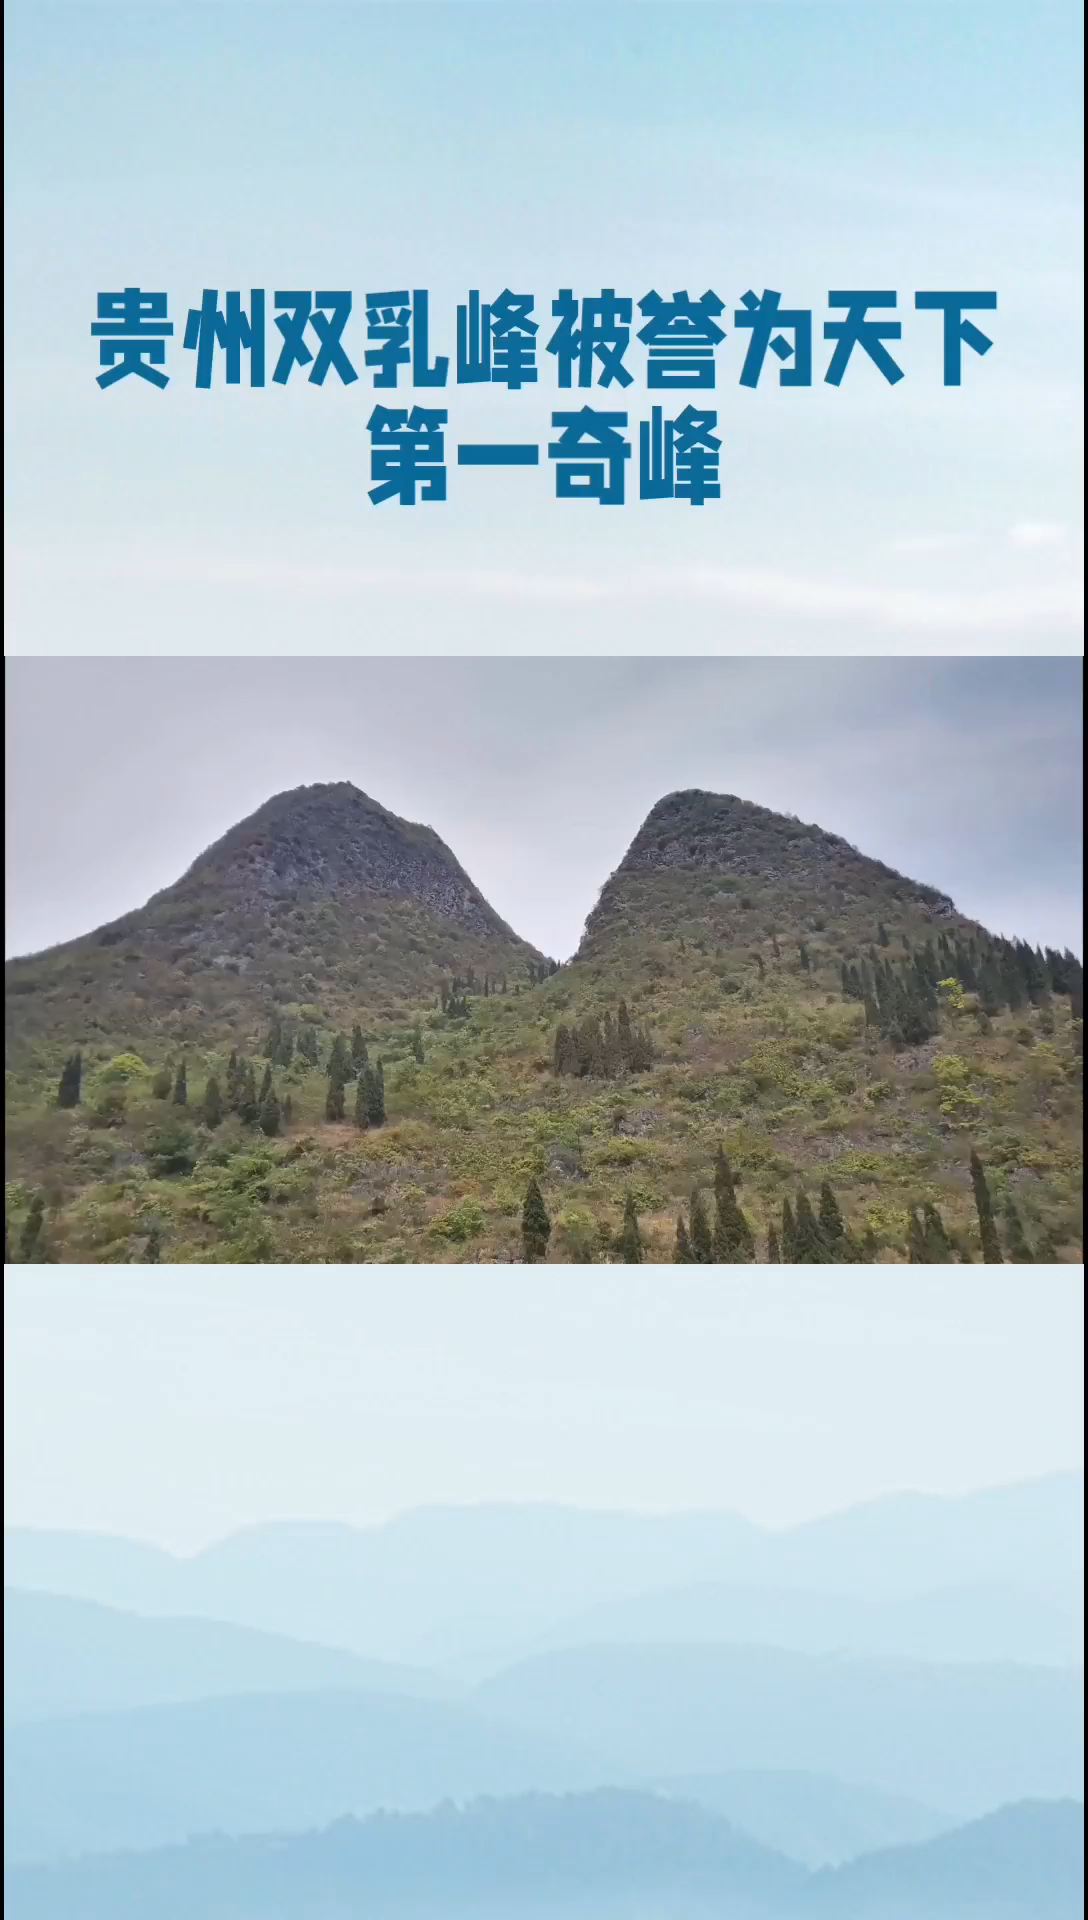 贵州的双乳峰，被誉为一绝，是自然界的鬼斧神工。 双乳峰位于贵州省贞丰县城境内，是喀斯特地貌的峰林绝品